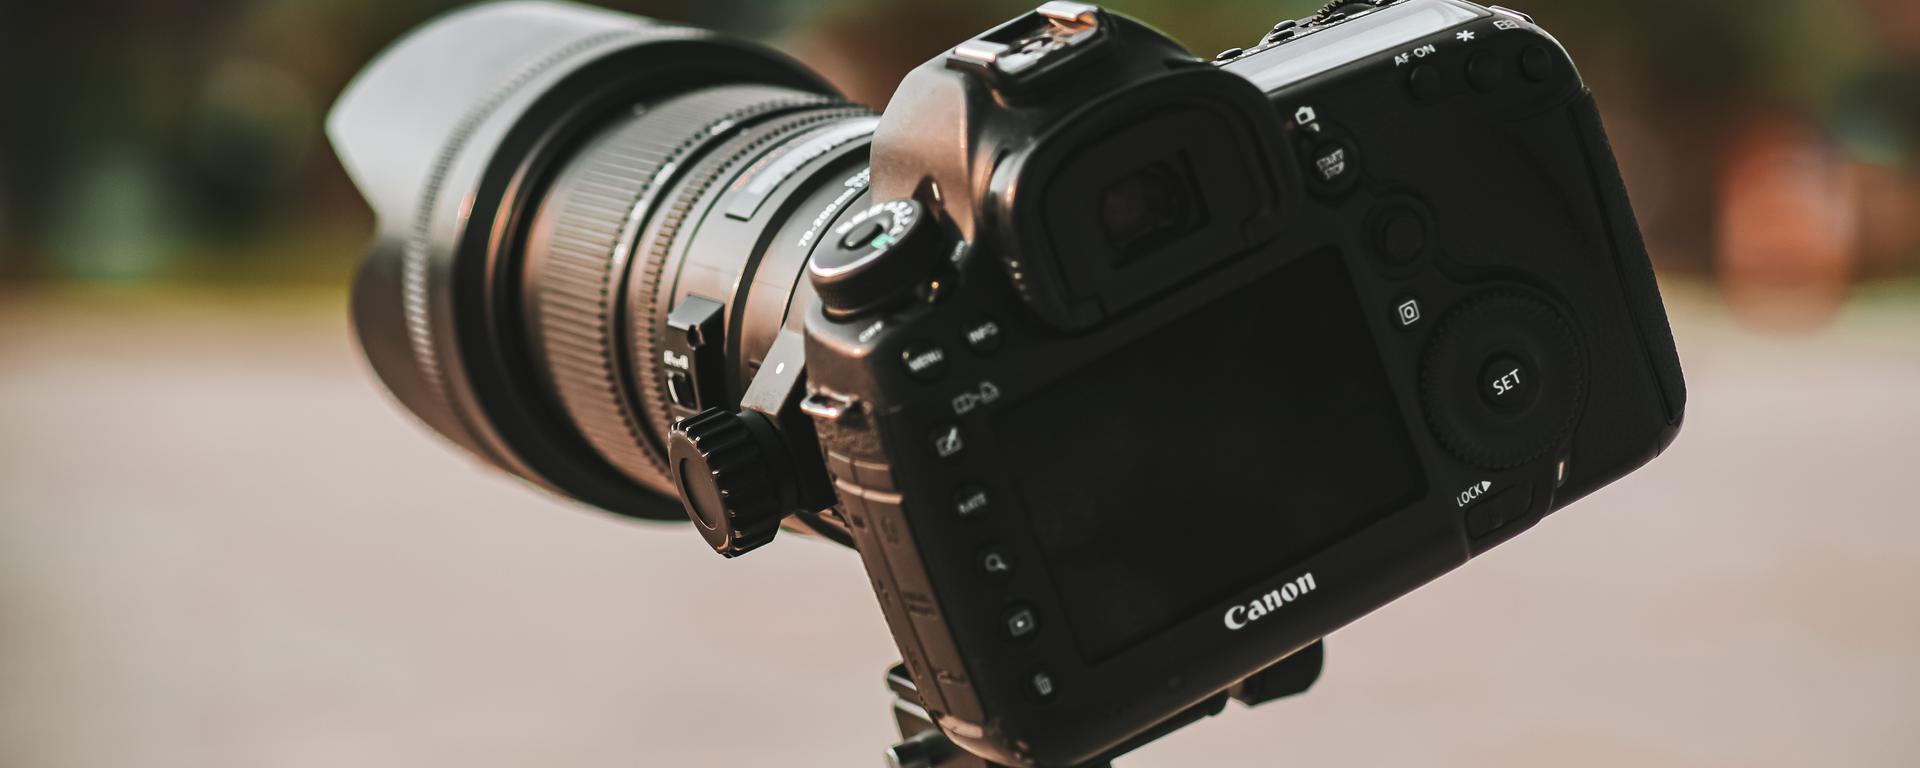 Tamano relativo aniversario Mojado Cómo elegir tu primera cámara fotográfica? Aspectos para considerar antes  de comprar una | Cámaras digitales | Sony | Canon | Nikon | Pentax |  Olympus | TECNOLOGIA | EL COMERCIO PERÚ